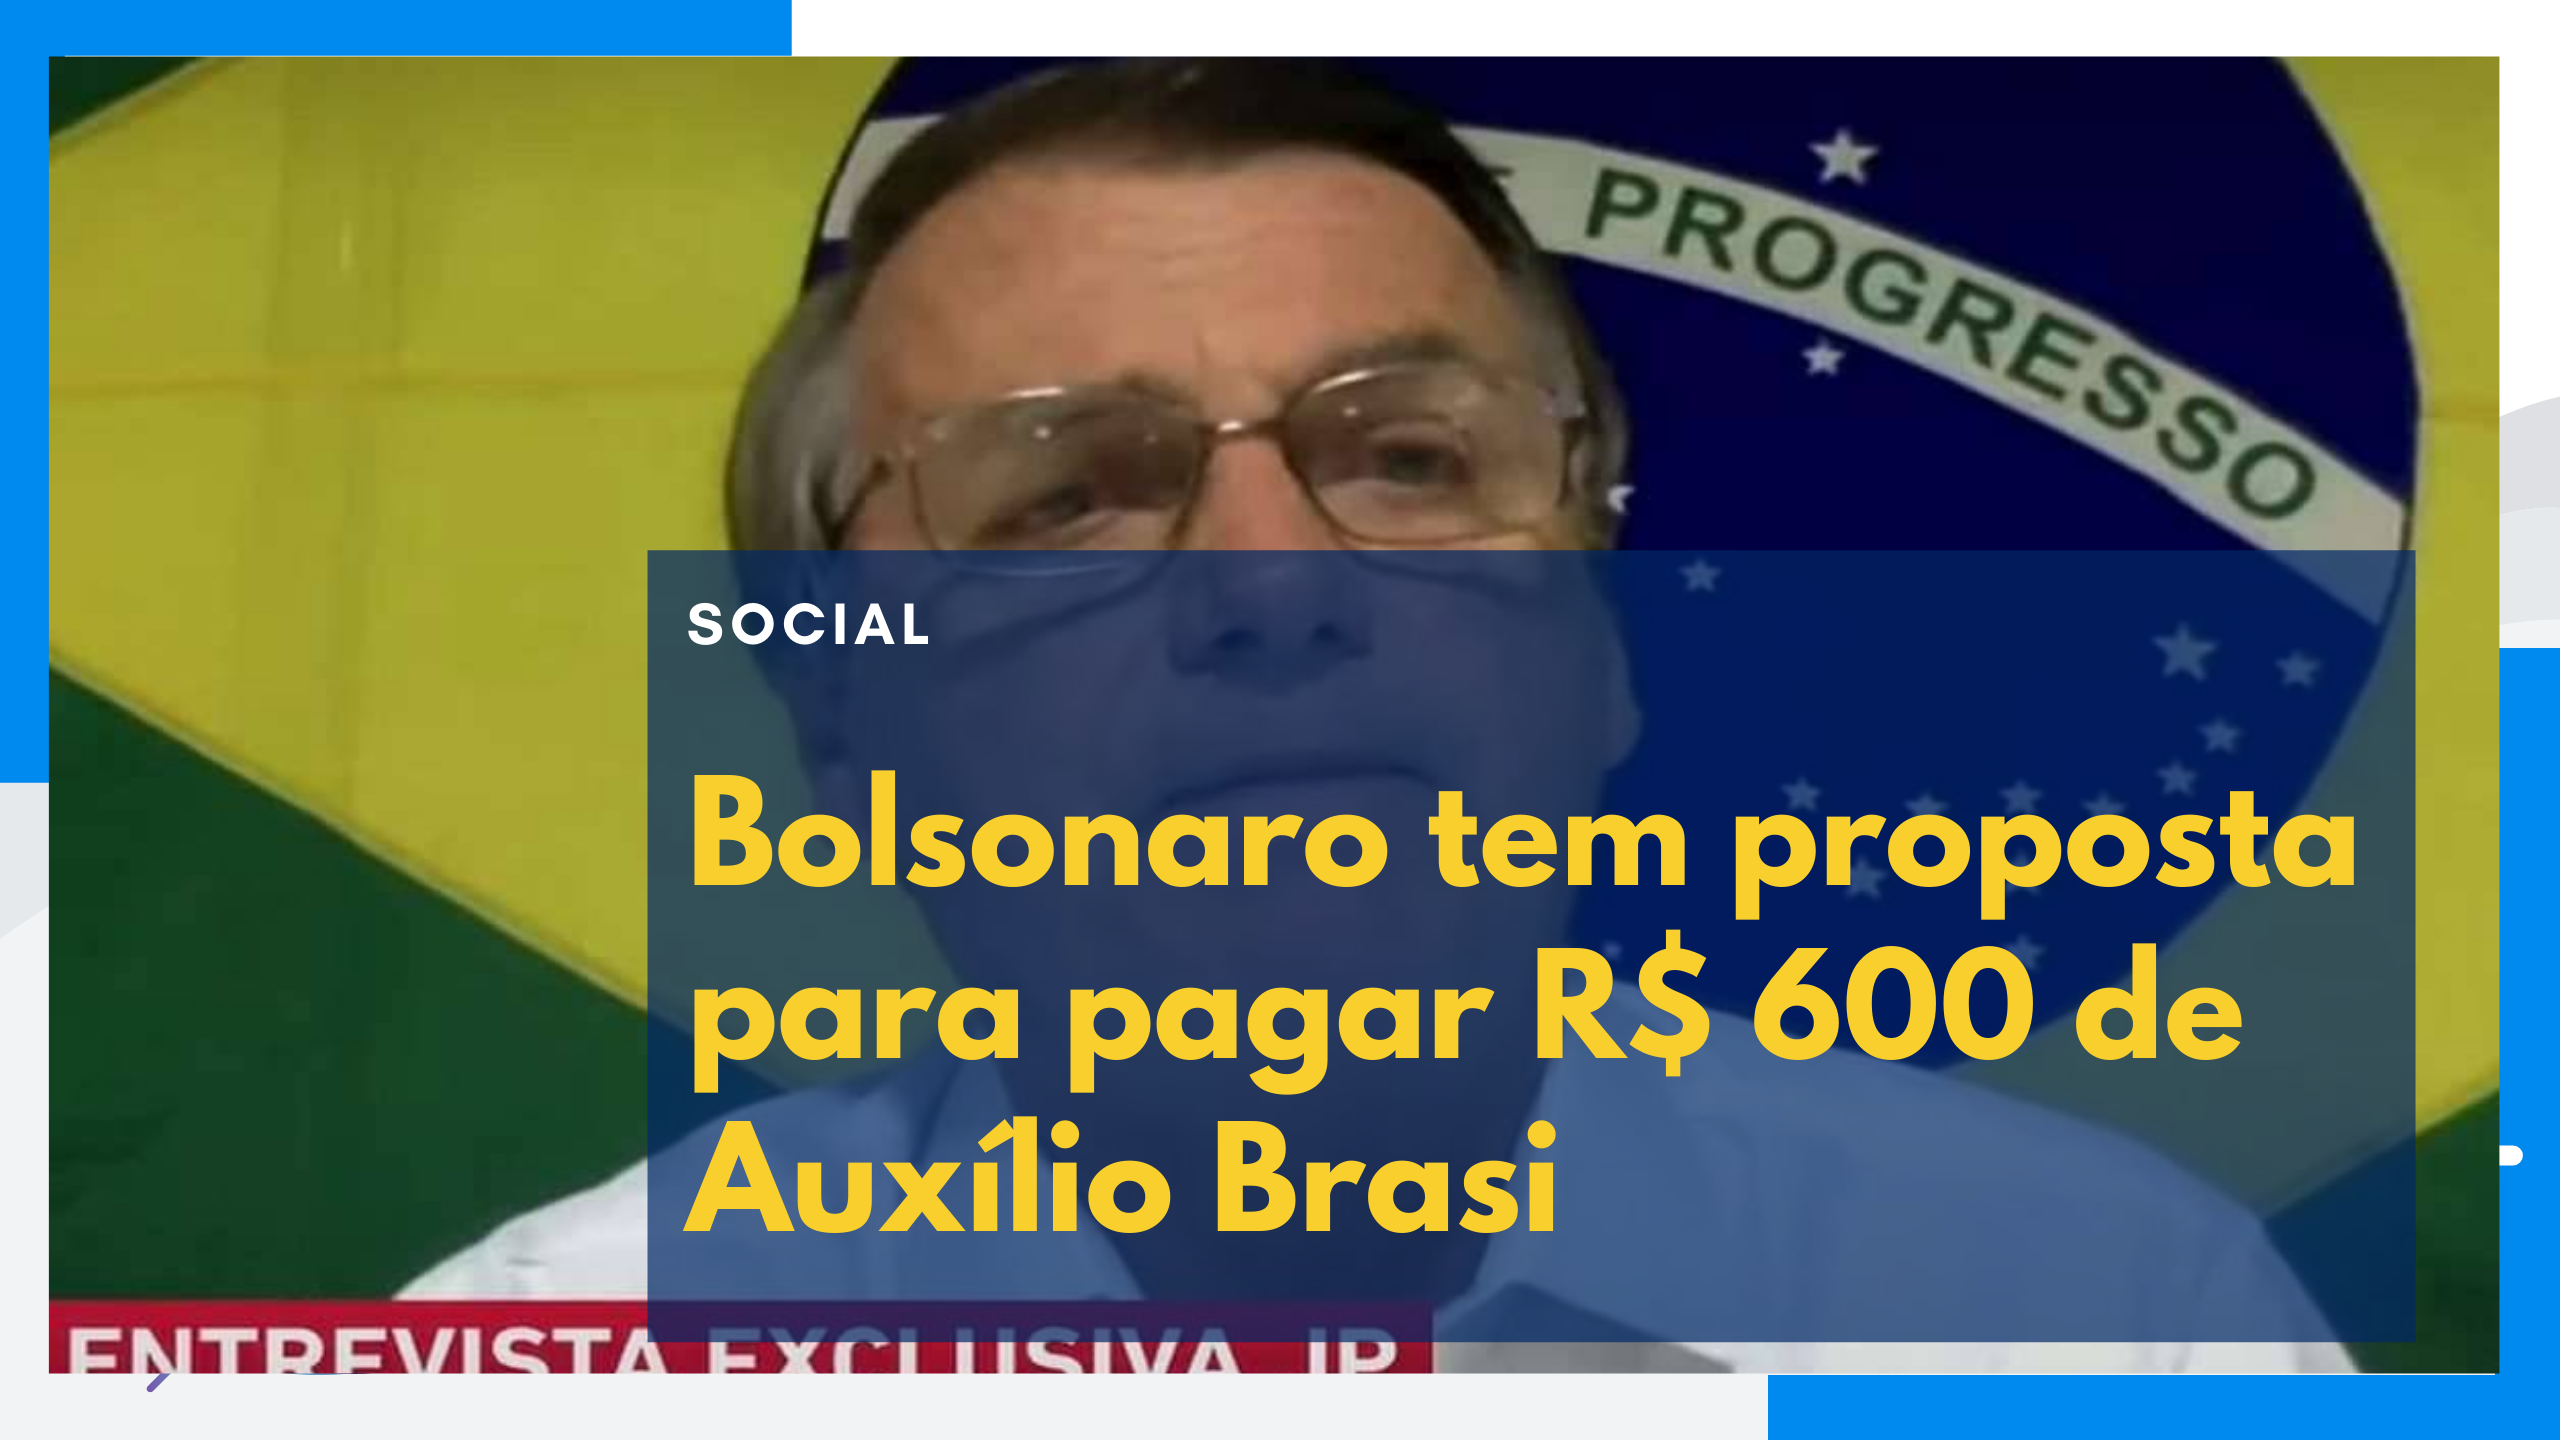 Bolsonaro tem proposta para pagar R$ 600 de Auxílio Brasil. O que é verdade nisso?